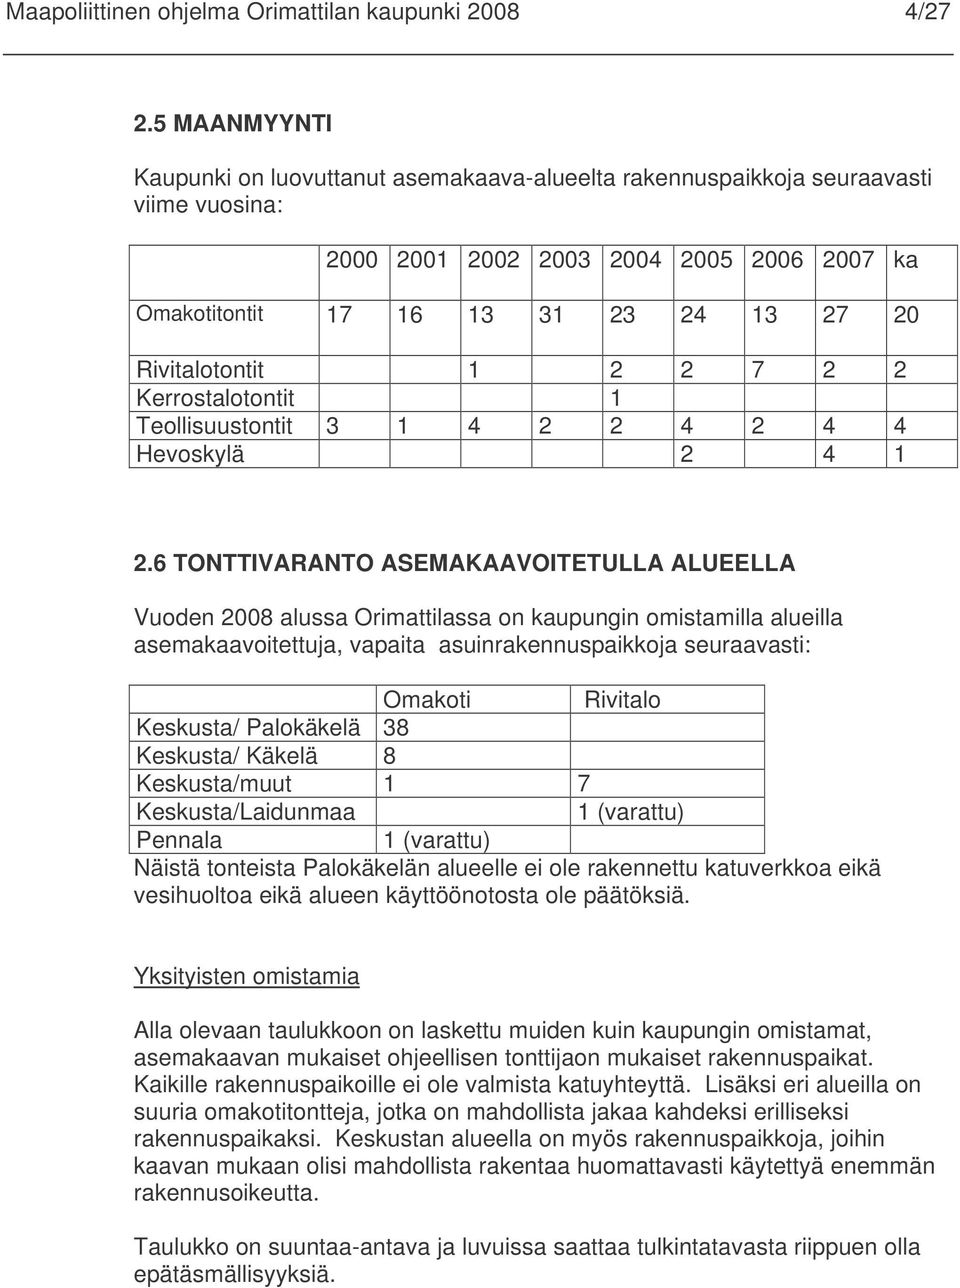 1 2 2 7 2 2 Kerrostalotontit 1 Teollisuustontit 3 1 4 2 2 4 2 4 4 Hevoskylä 2 4 1 2.